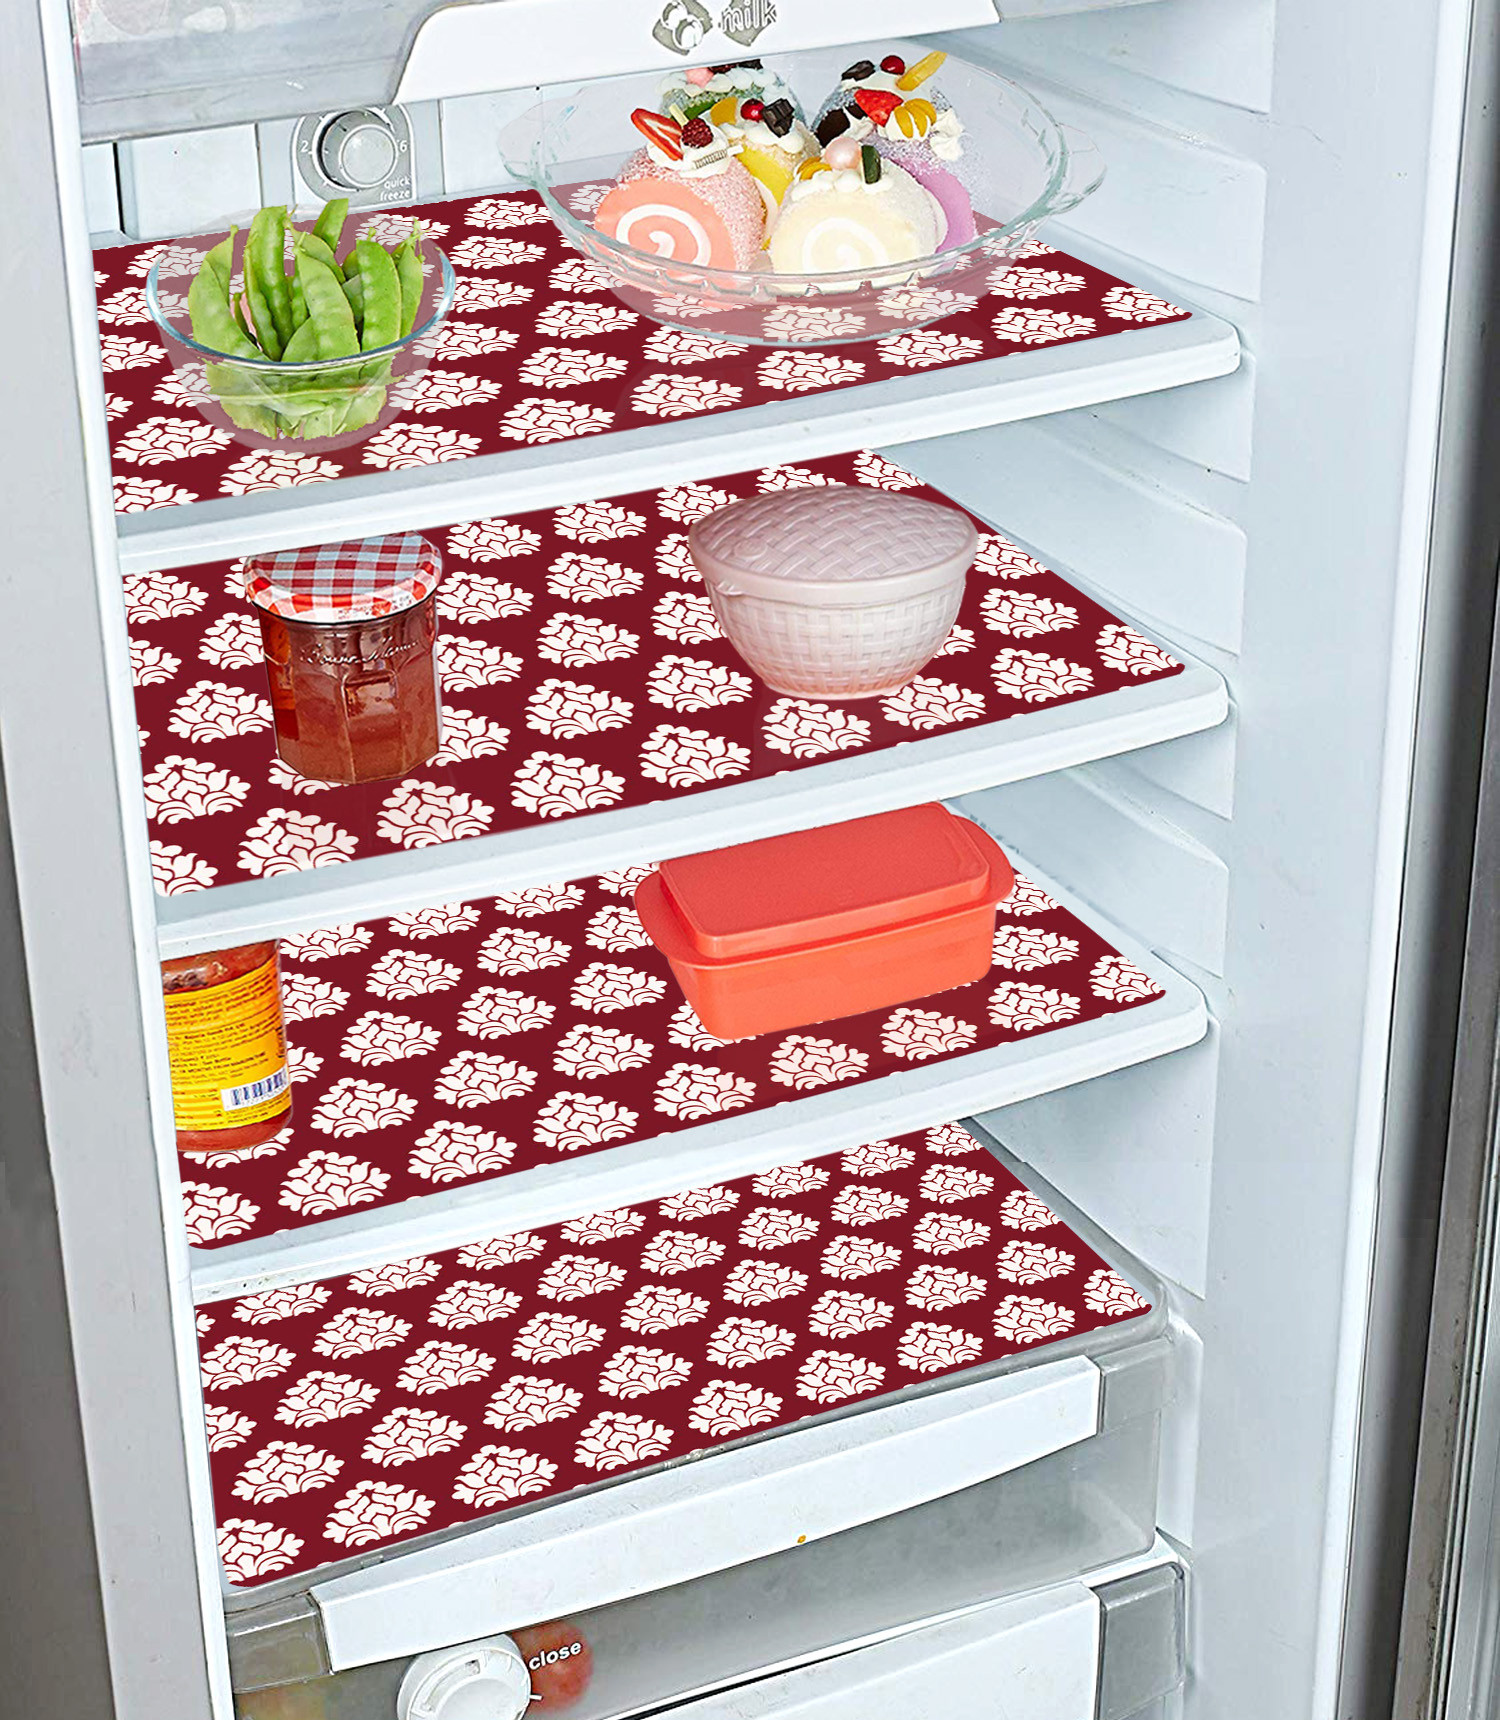 Kuber Industries Flower Print Waterproof, Stain Resistant, Washable Refrigerator/Fridge Drawer Mat, Set of 6 (Maroon)